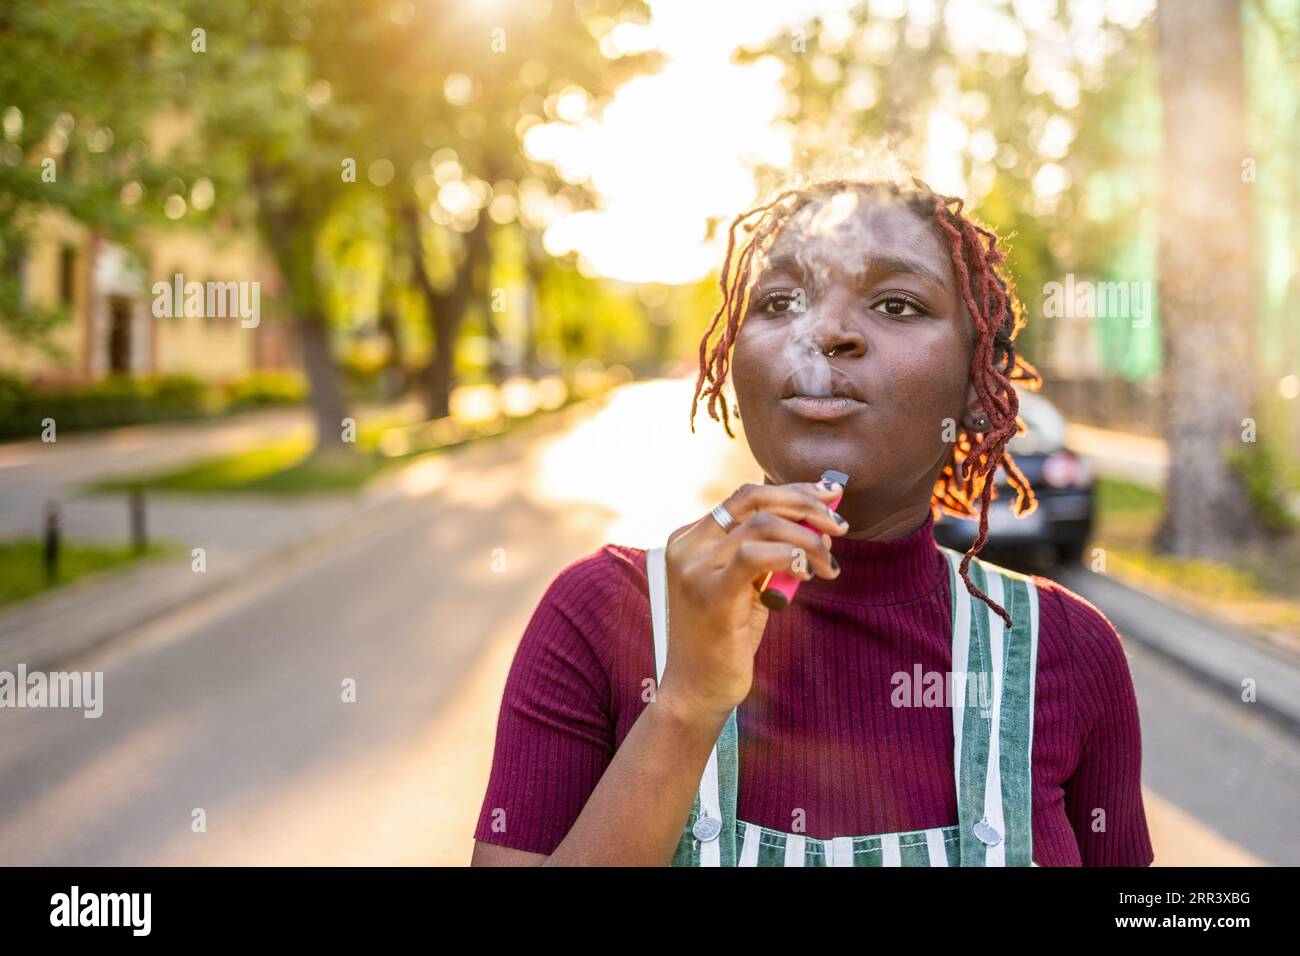 Schwarze nichtbinäre Person raucht elektronische Zigarette auf der Straße Stockfoto